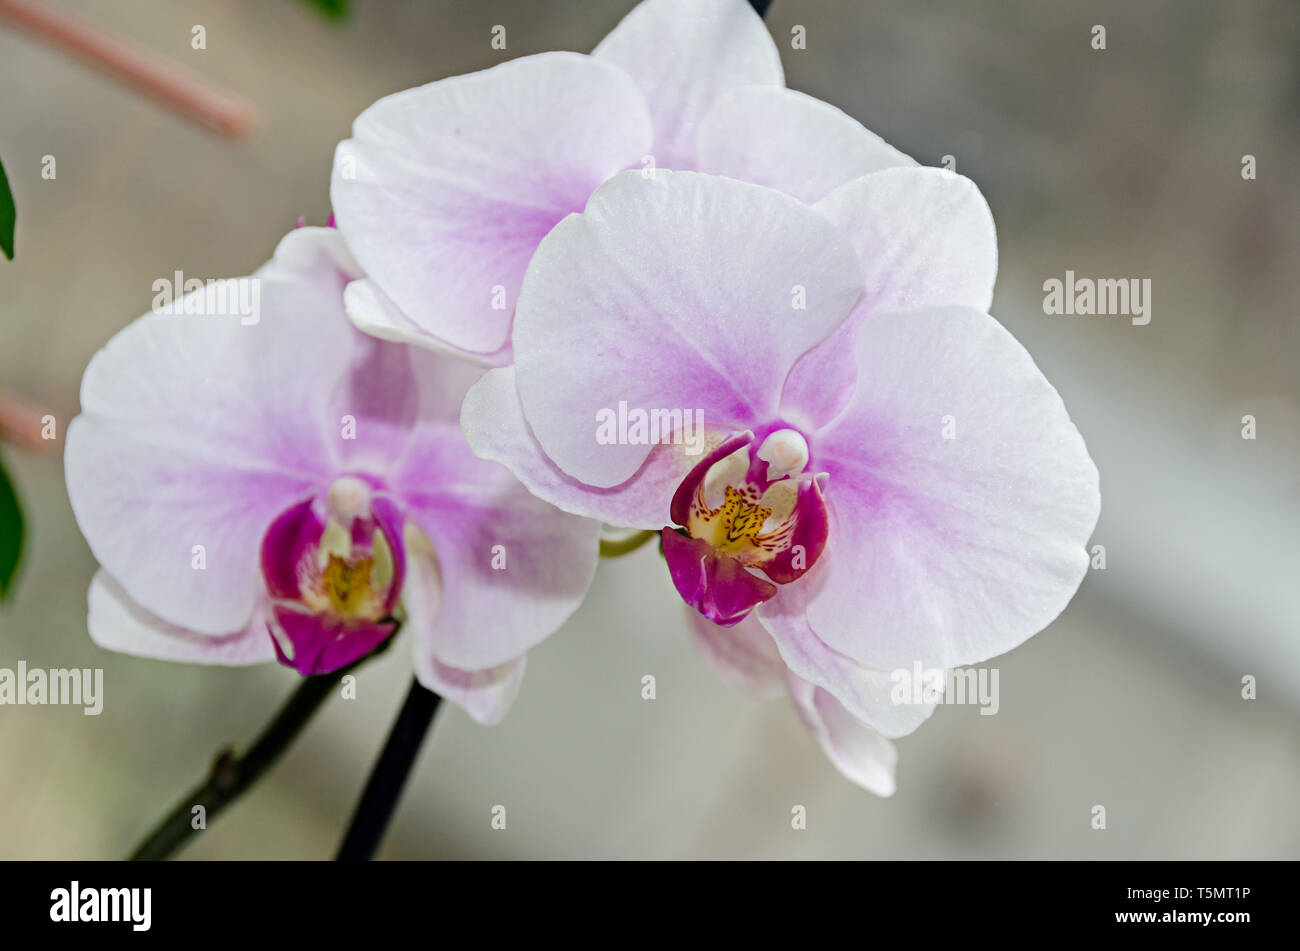 Bianco e malva ramo di orchidea phal fiori, vicino, lo sfondo della finestra. Foto Stock